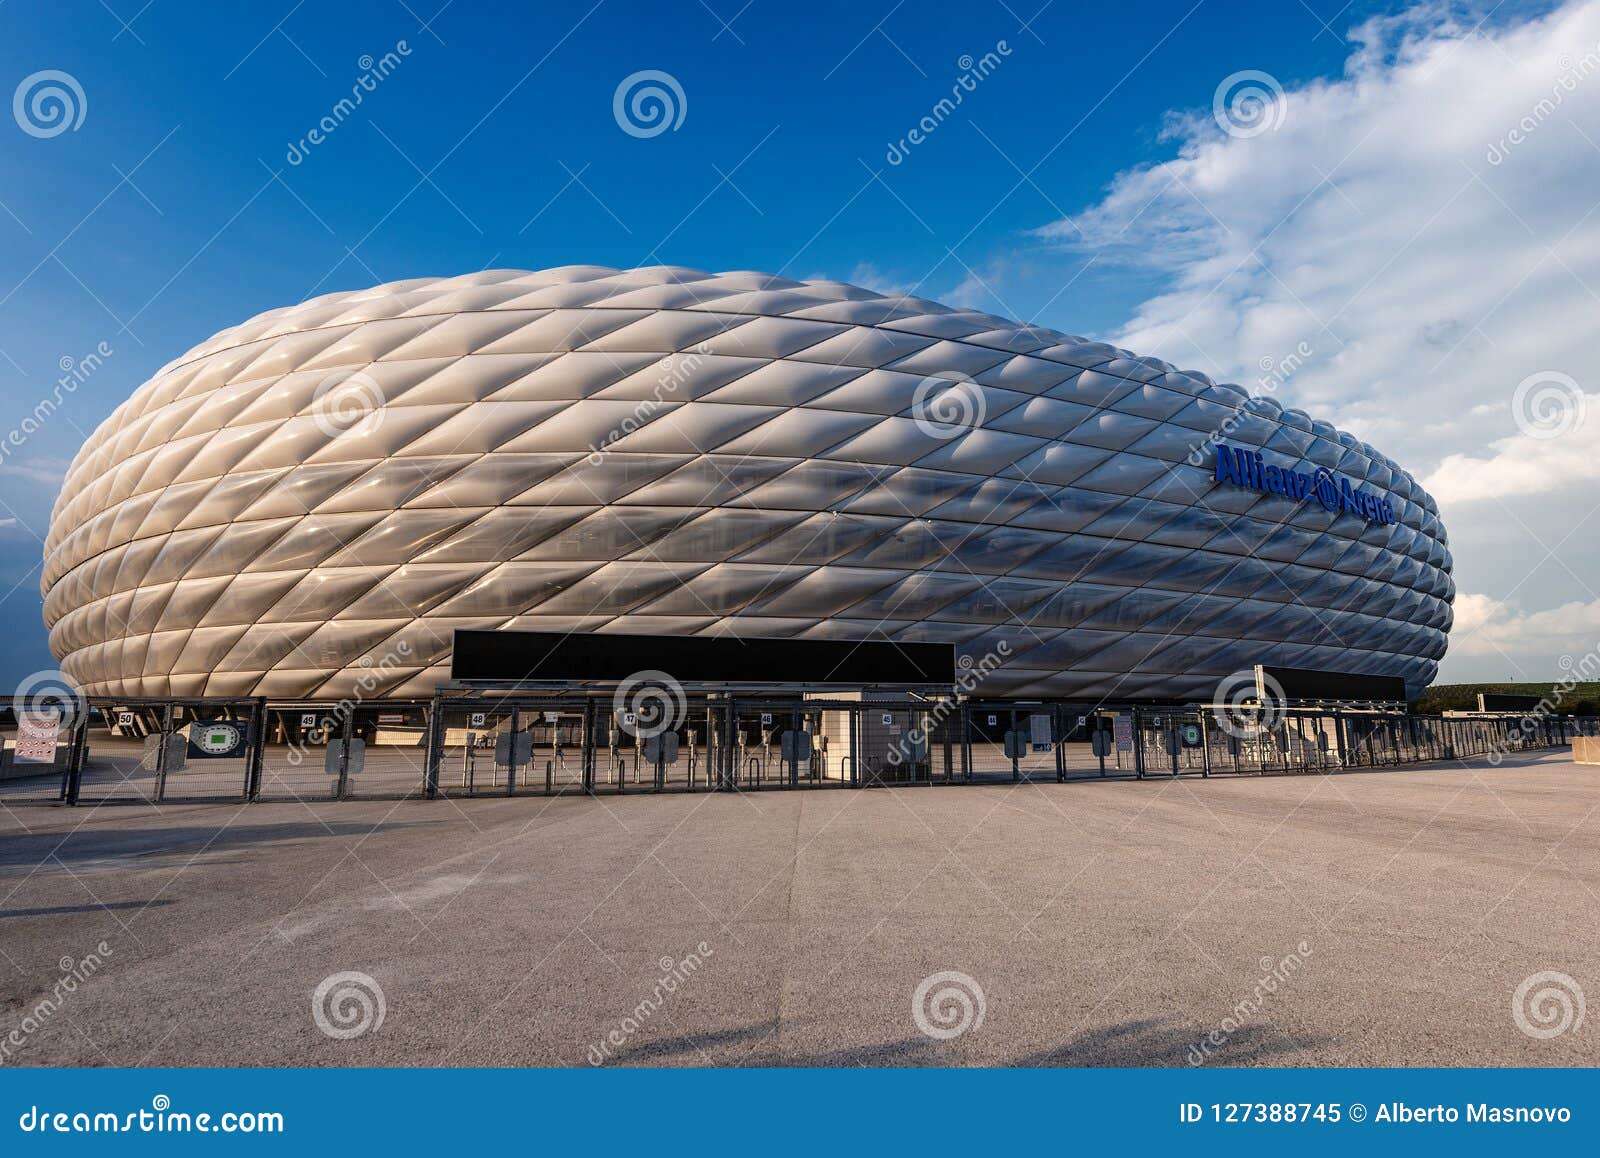 Футбольный стадион байерн мюнхен фото